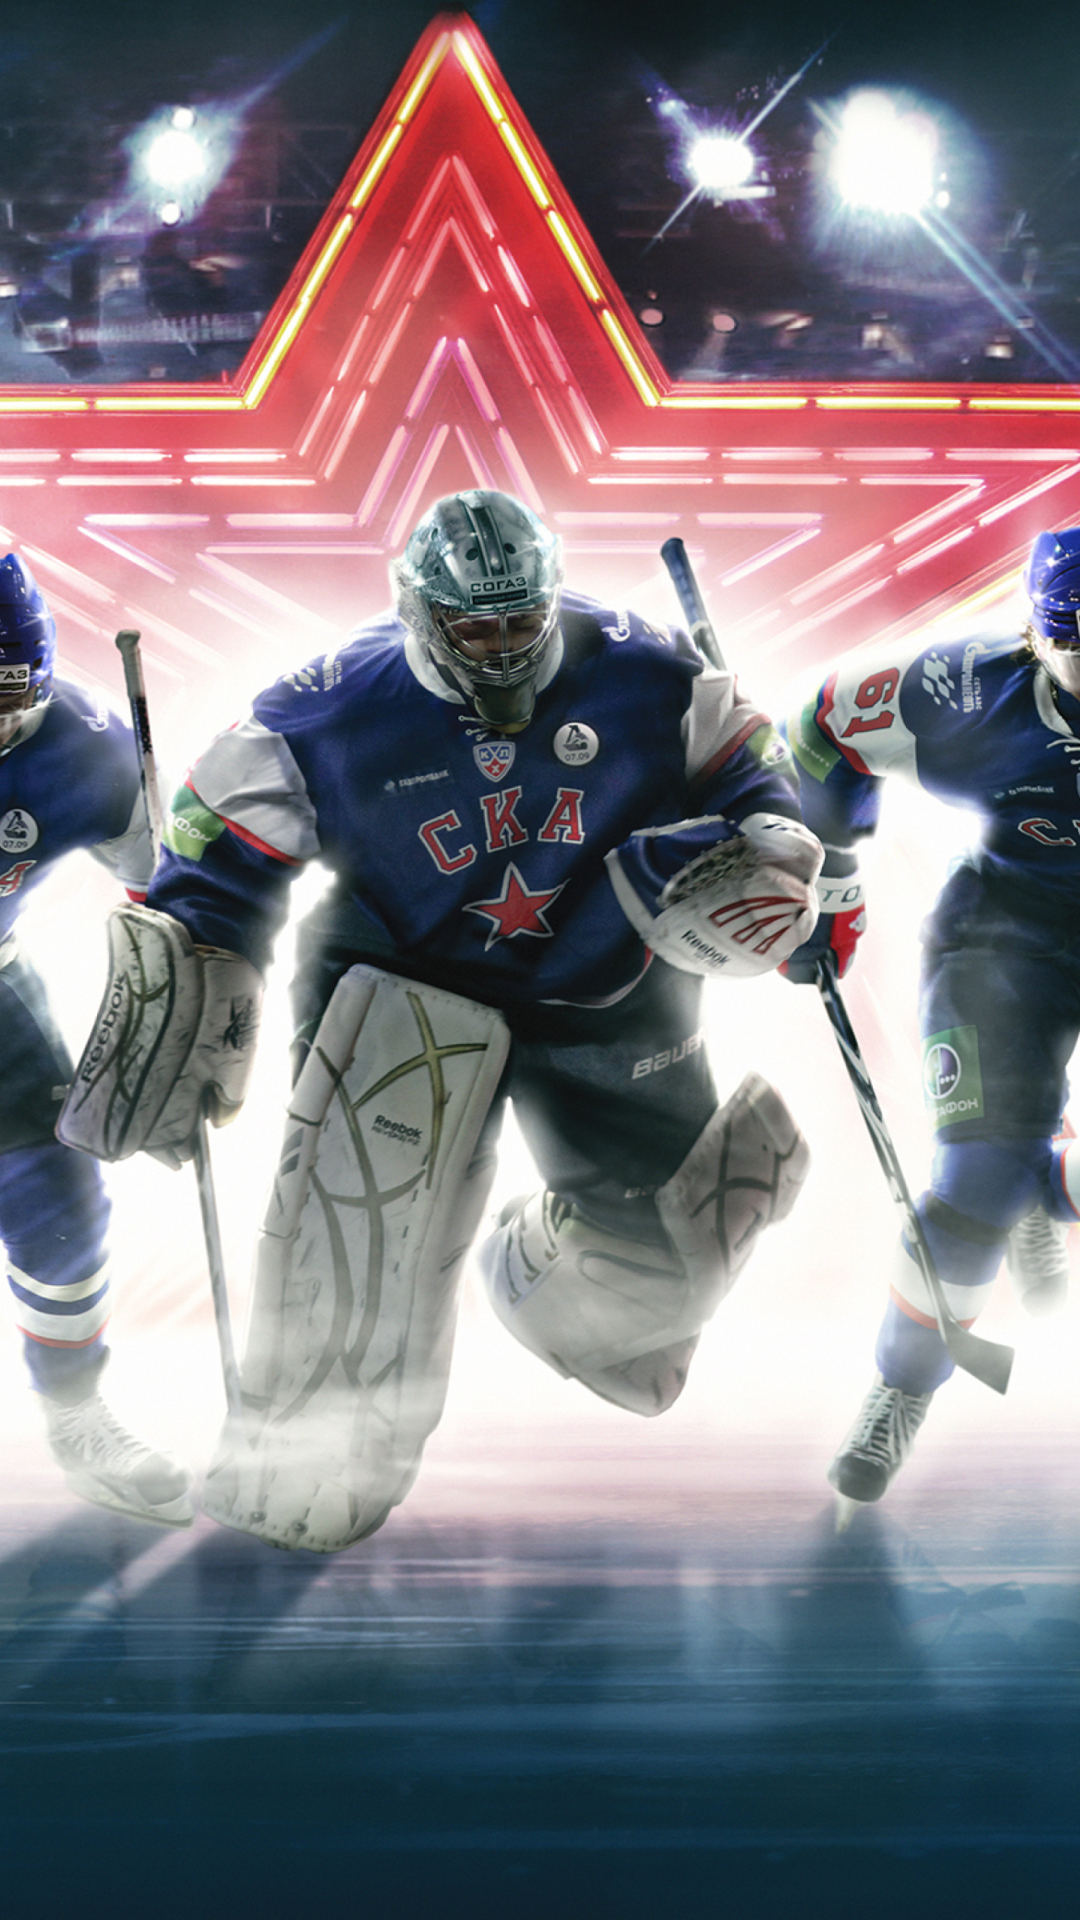 SKA Hockey Team wallpaper 1080x1920